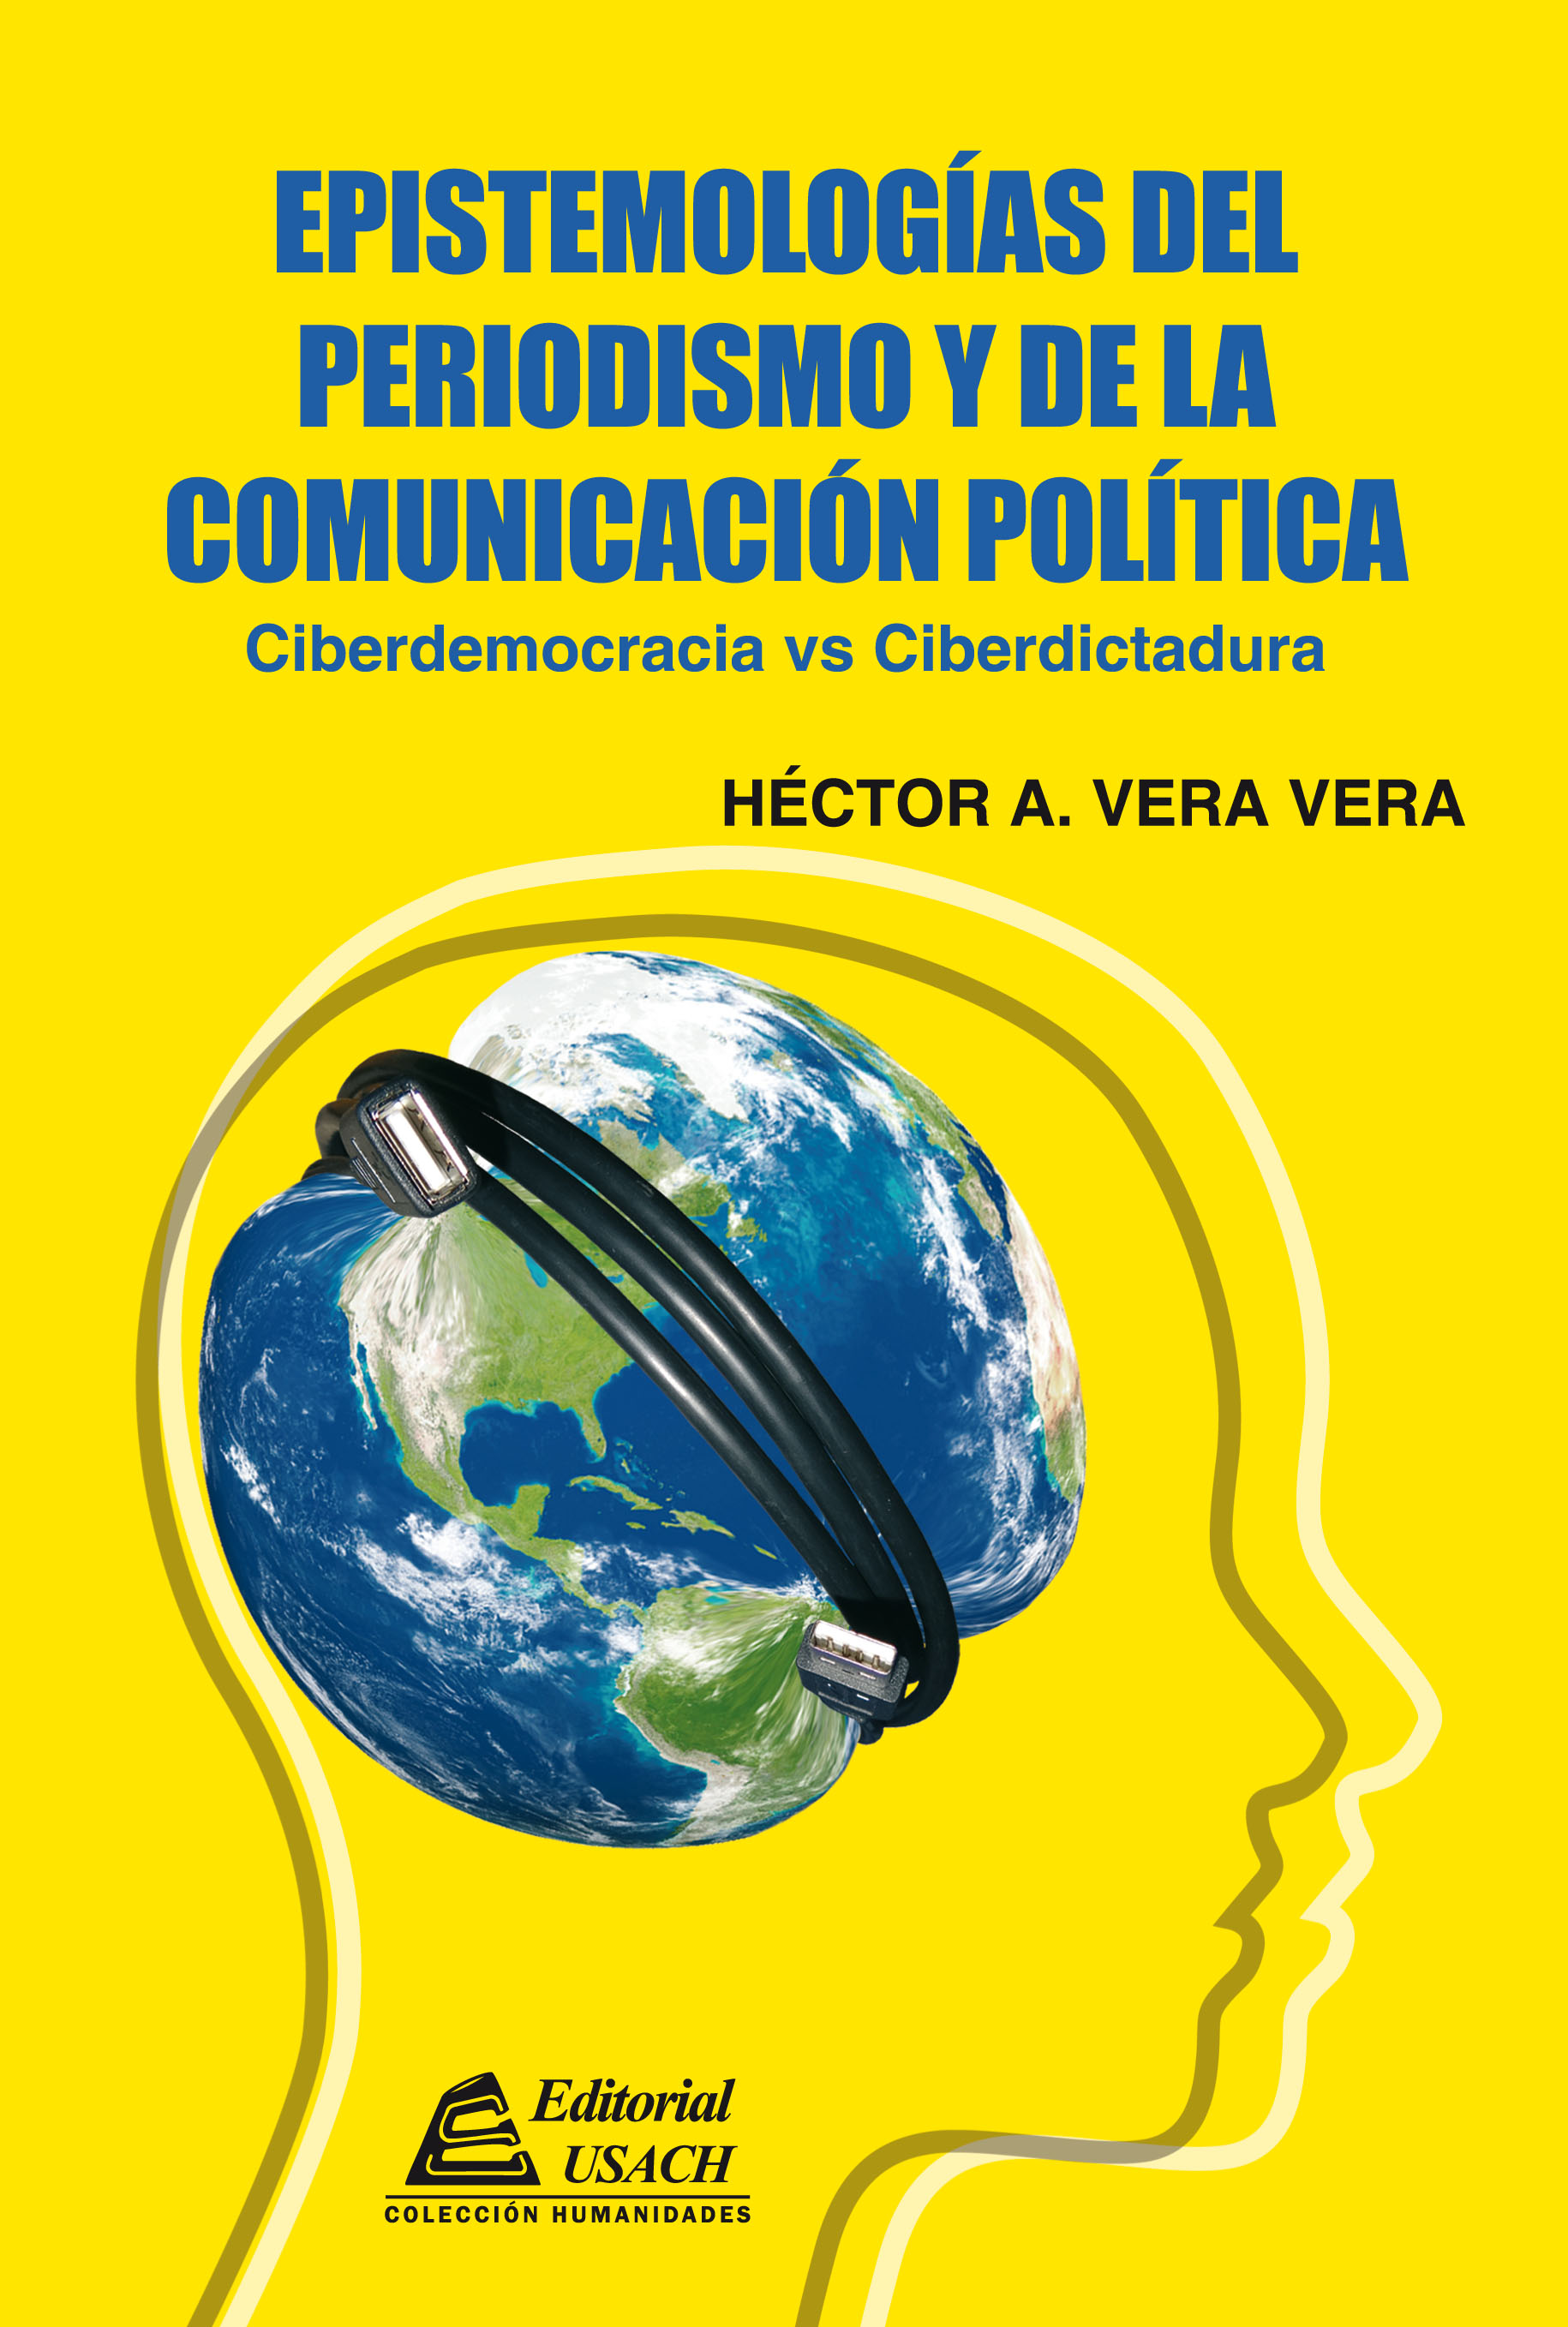 Editorial USACH lanzará “Epistemologías del periodismo y de la comunicación política” de Héctor Vera V.